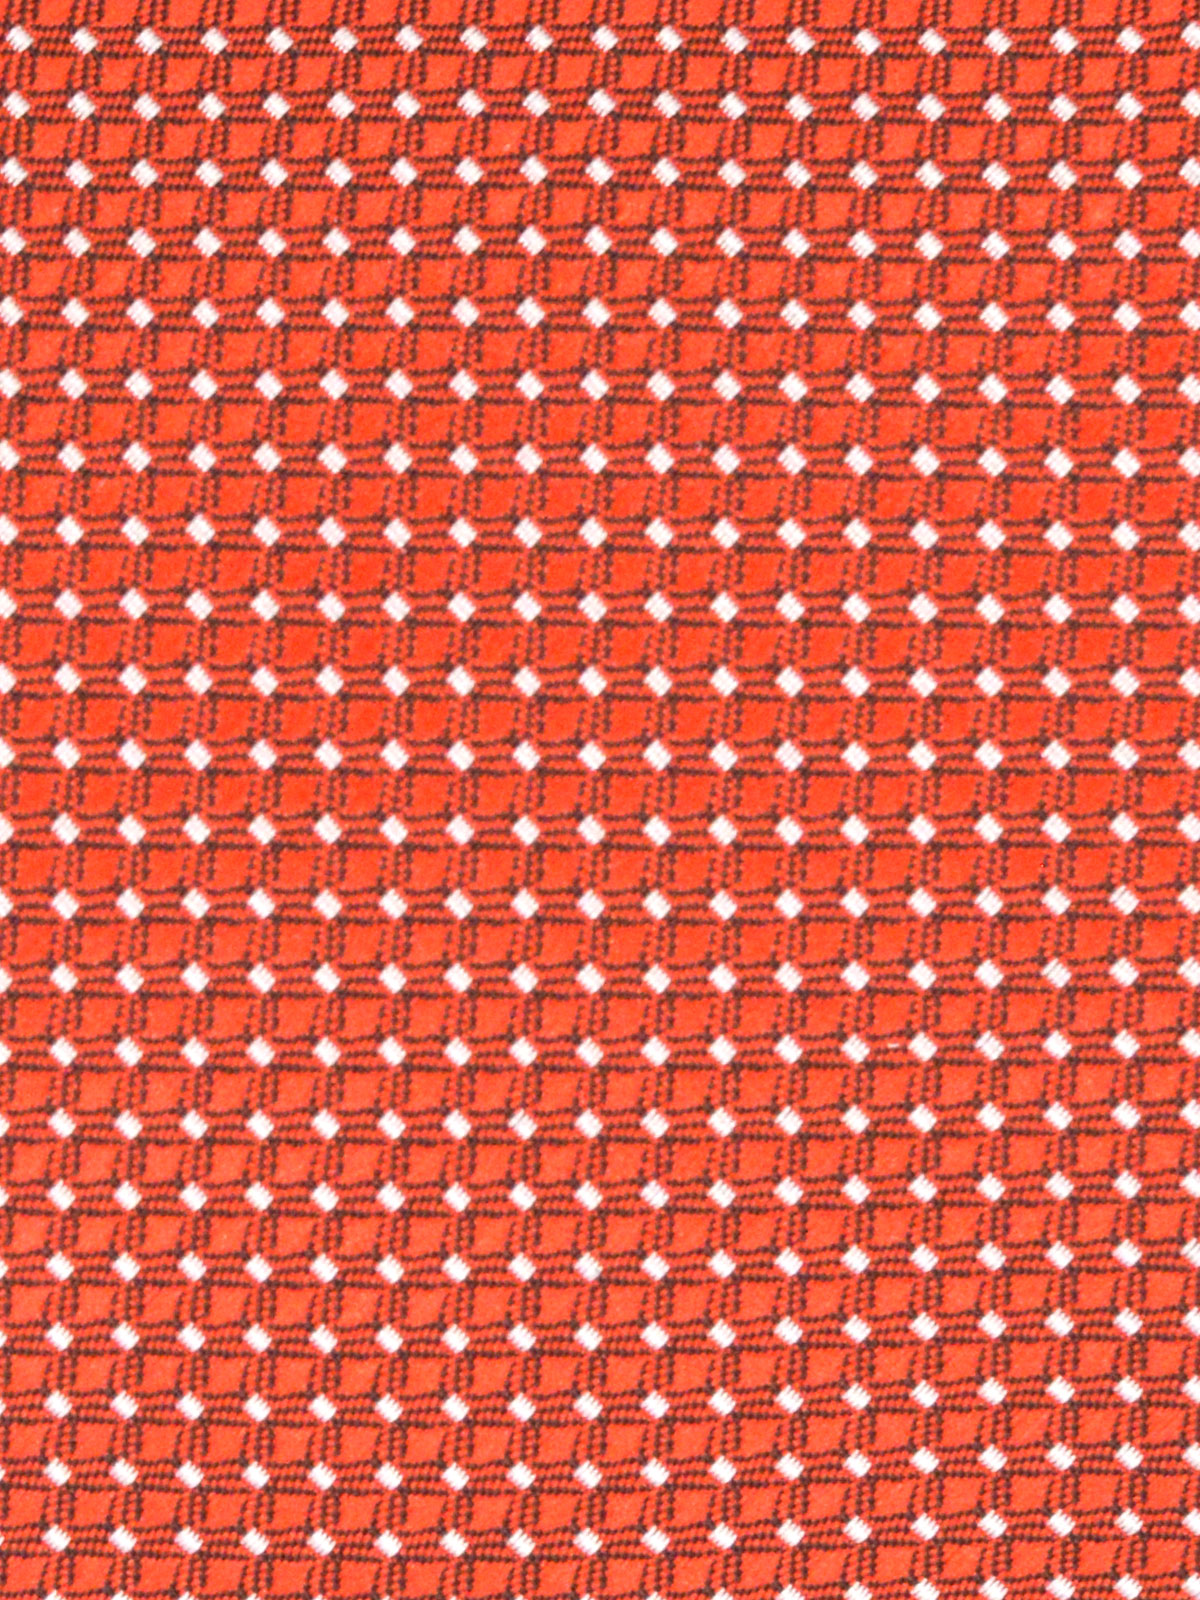  κόκκινη γραβάτα σε τετράγωνα με λευκό t - 10037 - € 14.06 img2